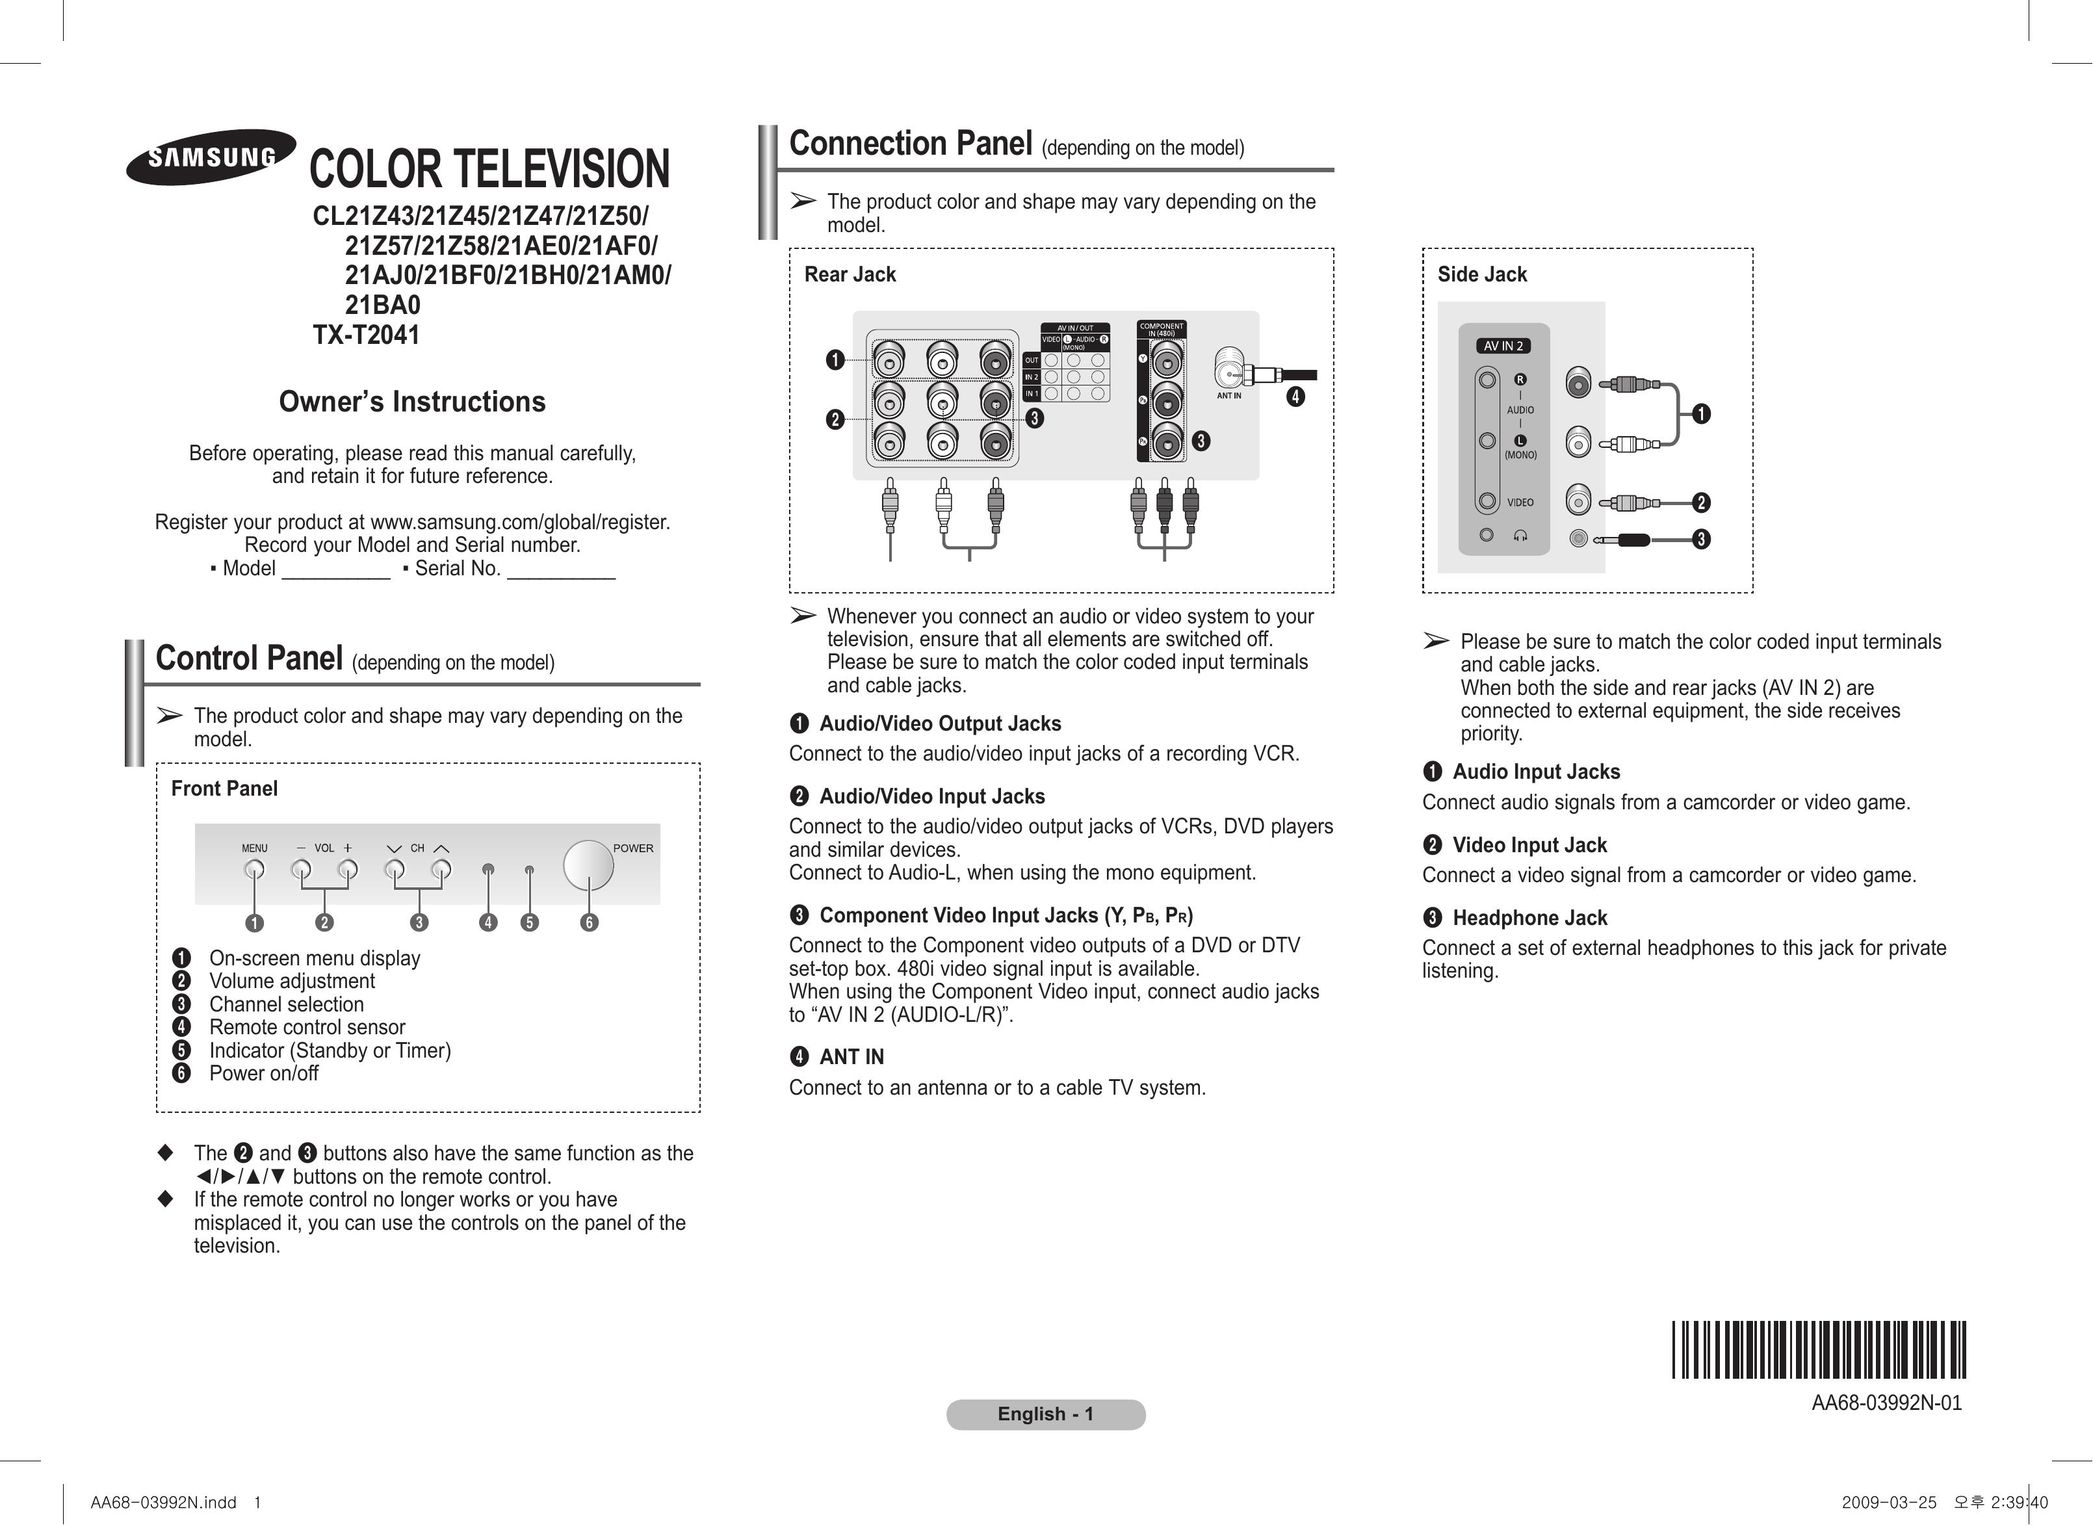 Samsung 2BA0 CRT Television User Manual